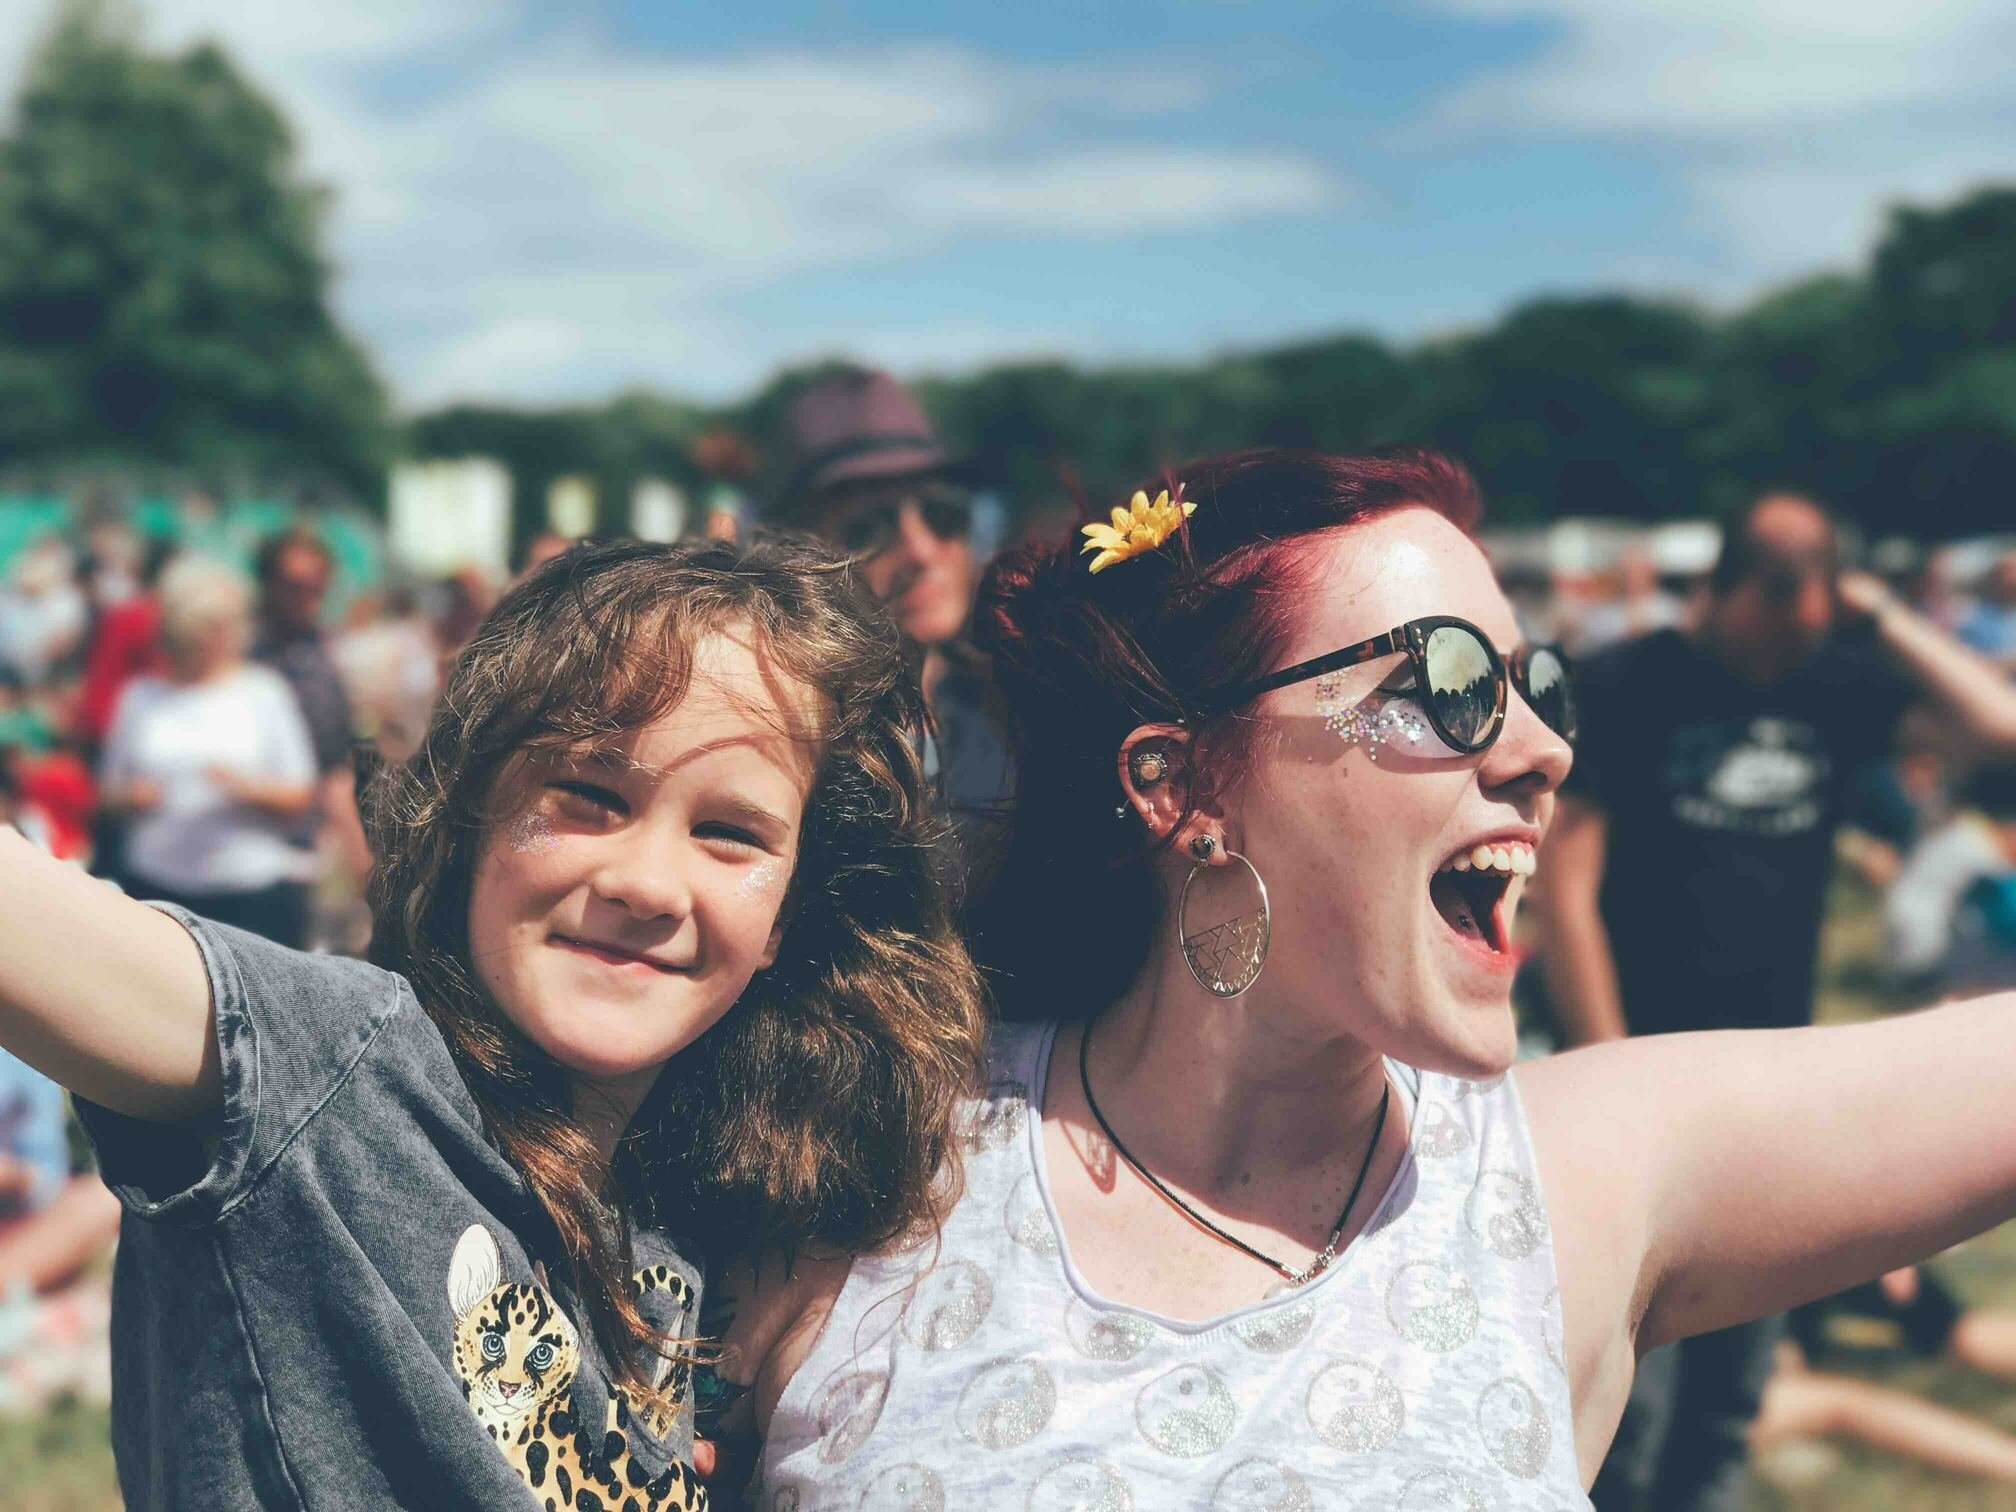 Menina e mulher lado a lado, de braços abertos e sorrindo, durante um festival.